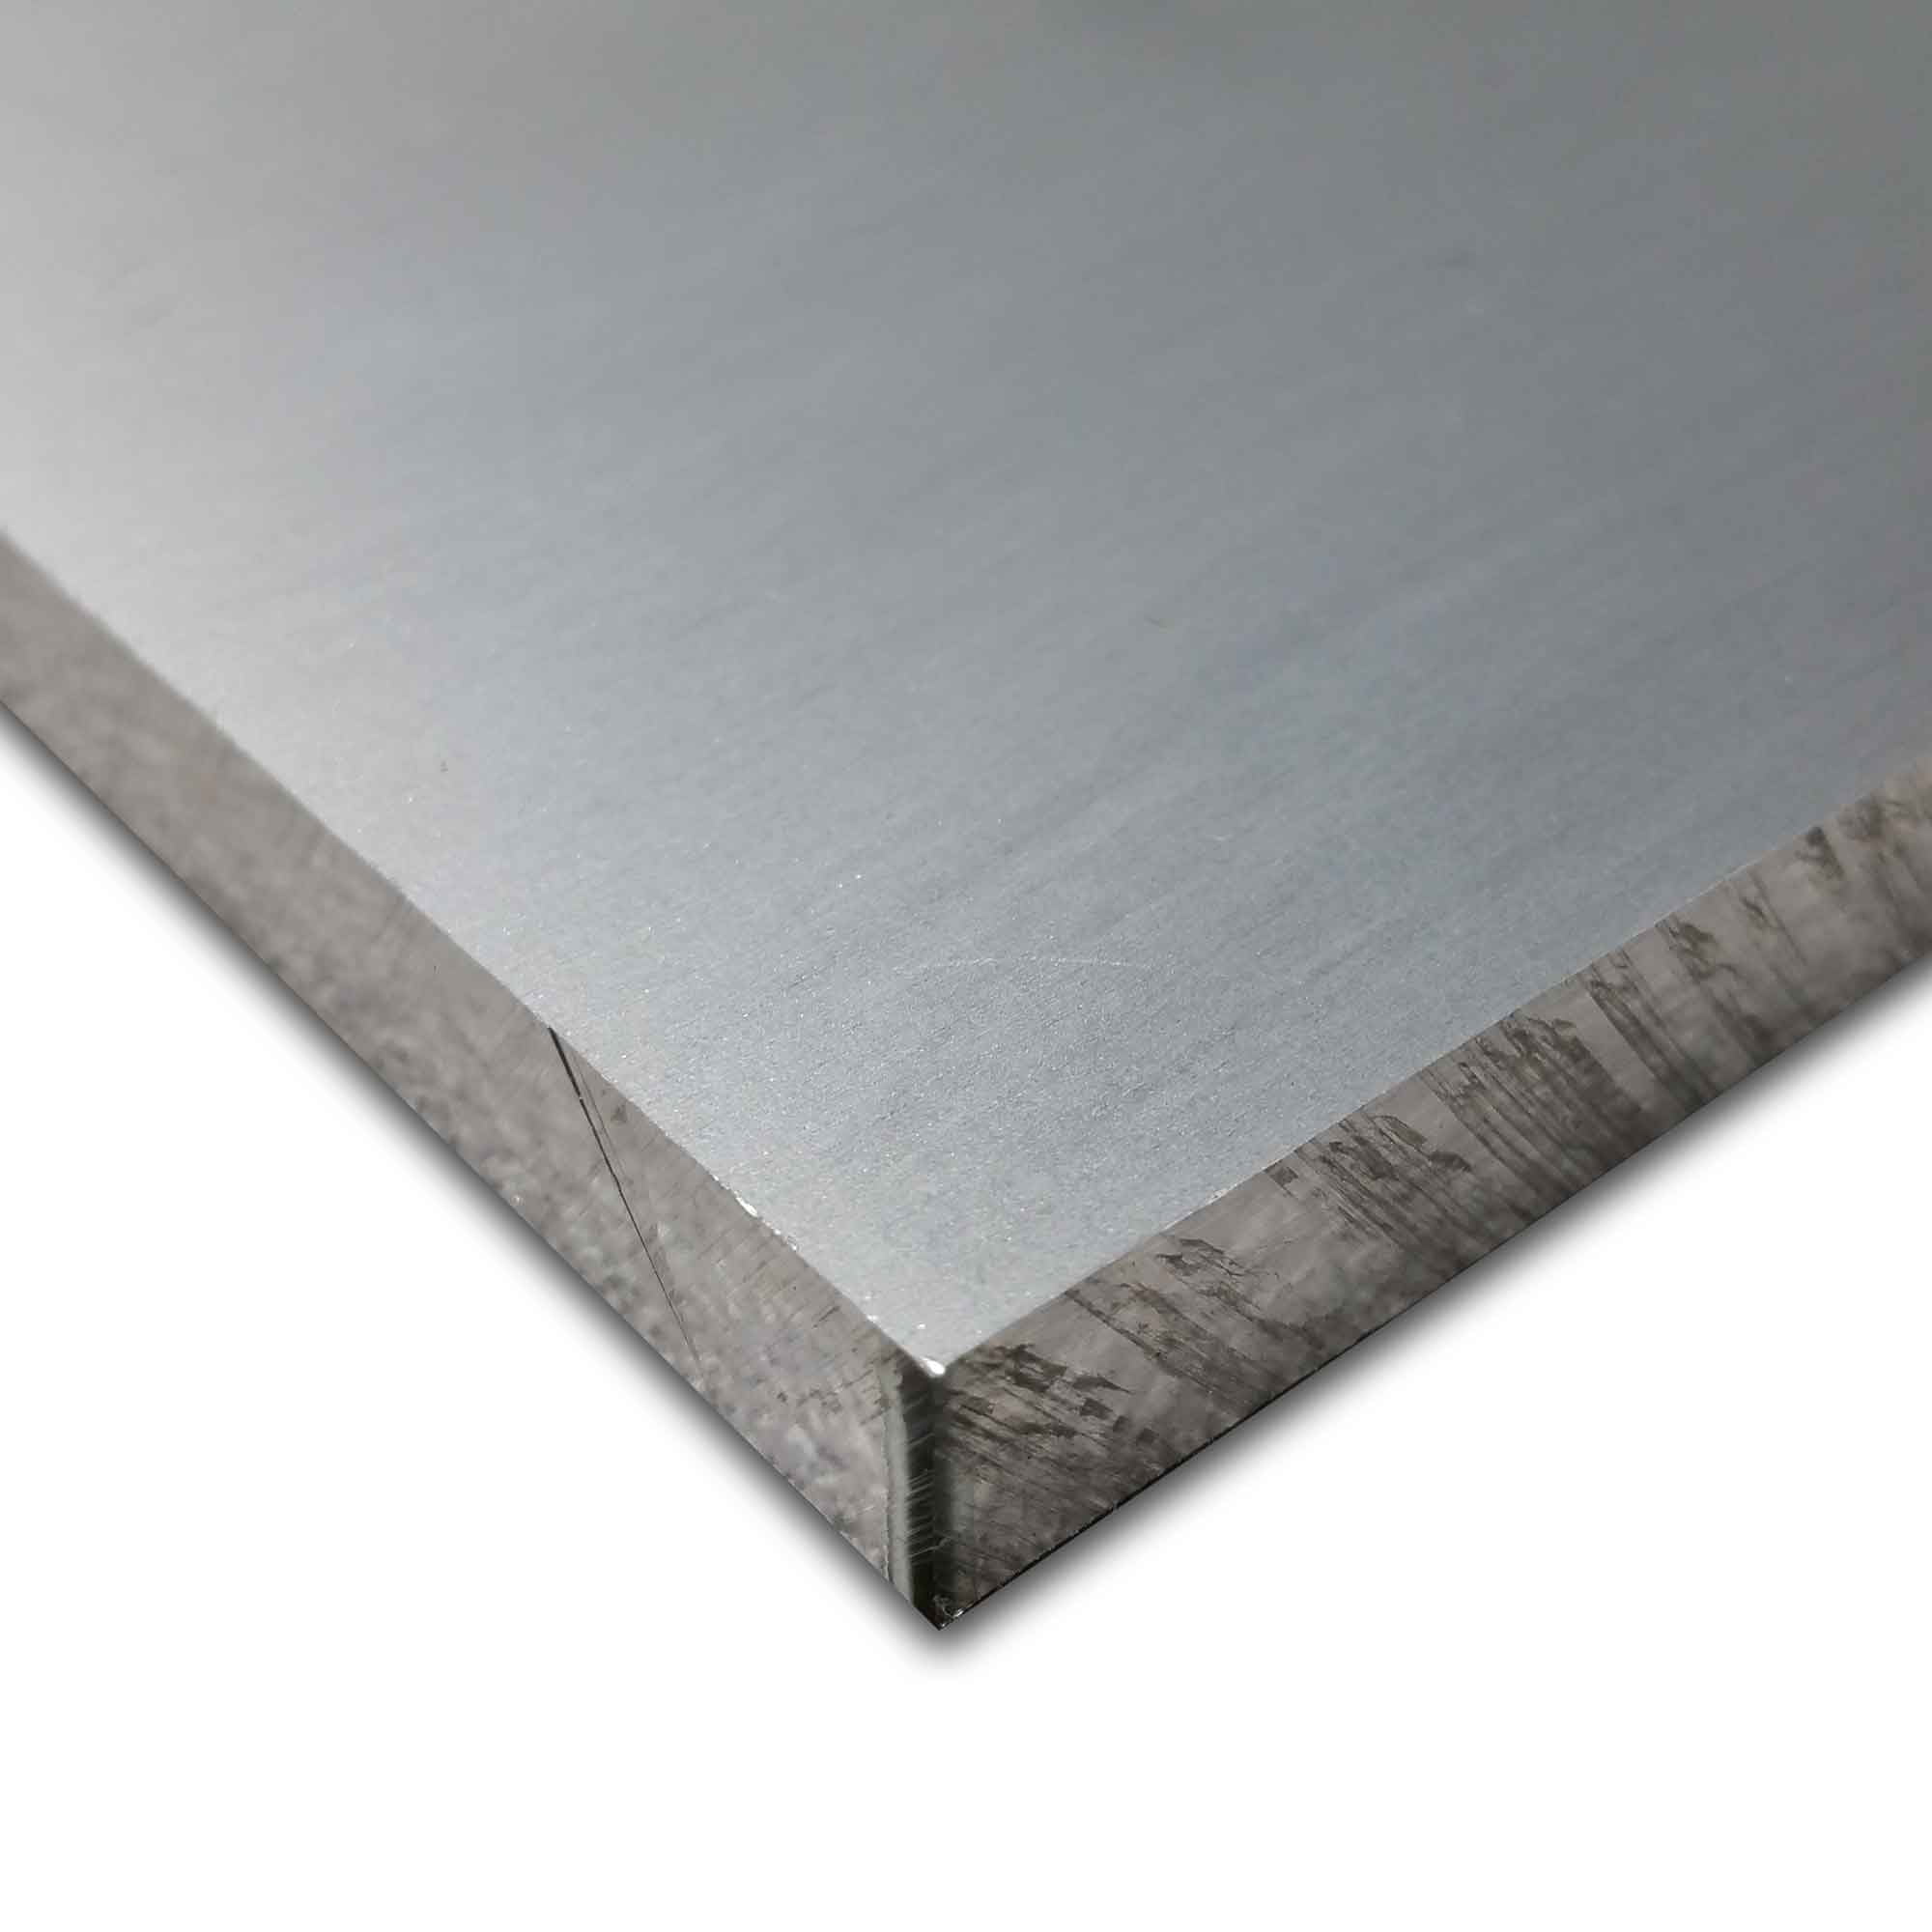 6061 Plate 4" Length 0.375" T6511 Mill Stock 3/8" x 1-1/2" Aluminum Flat Bar 